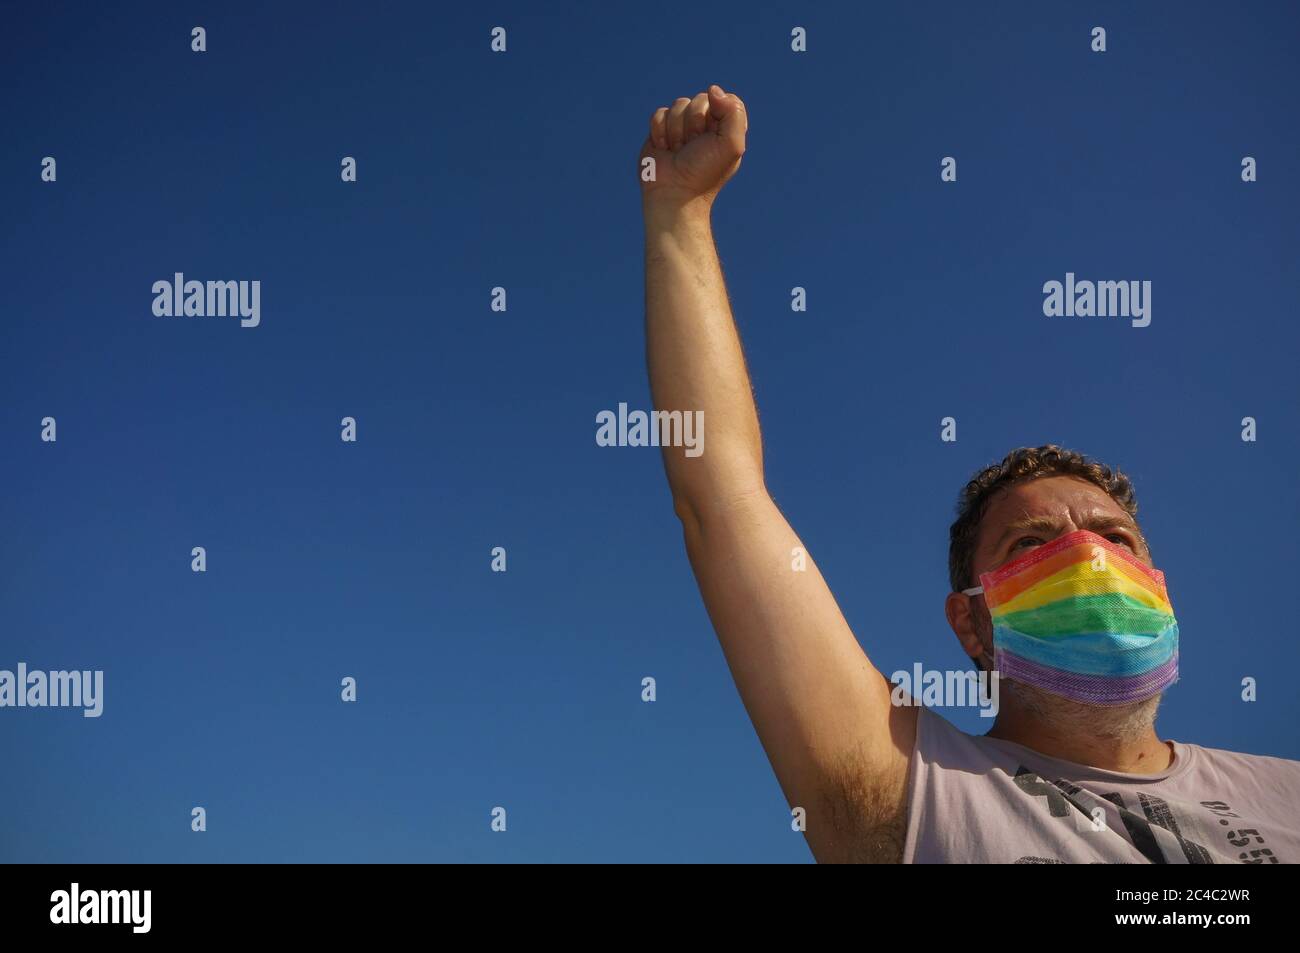 LGBTI Egalité concept: Homme avec le poing élevé portant un masque avec le drapeau lgbt arc-en-ciel dans la prévention des coronavirus luttant pour ses droits sur le ciel bleu Banque D'Images